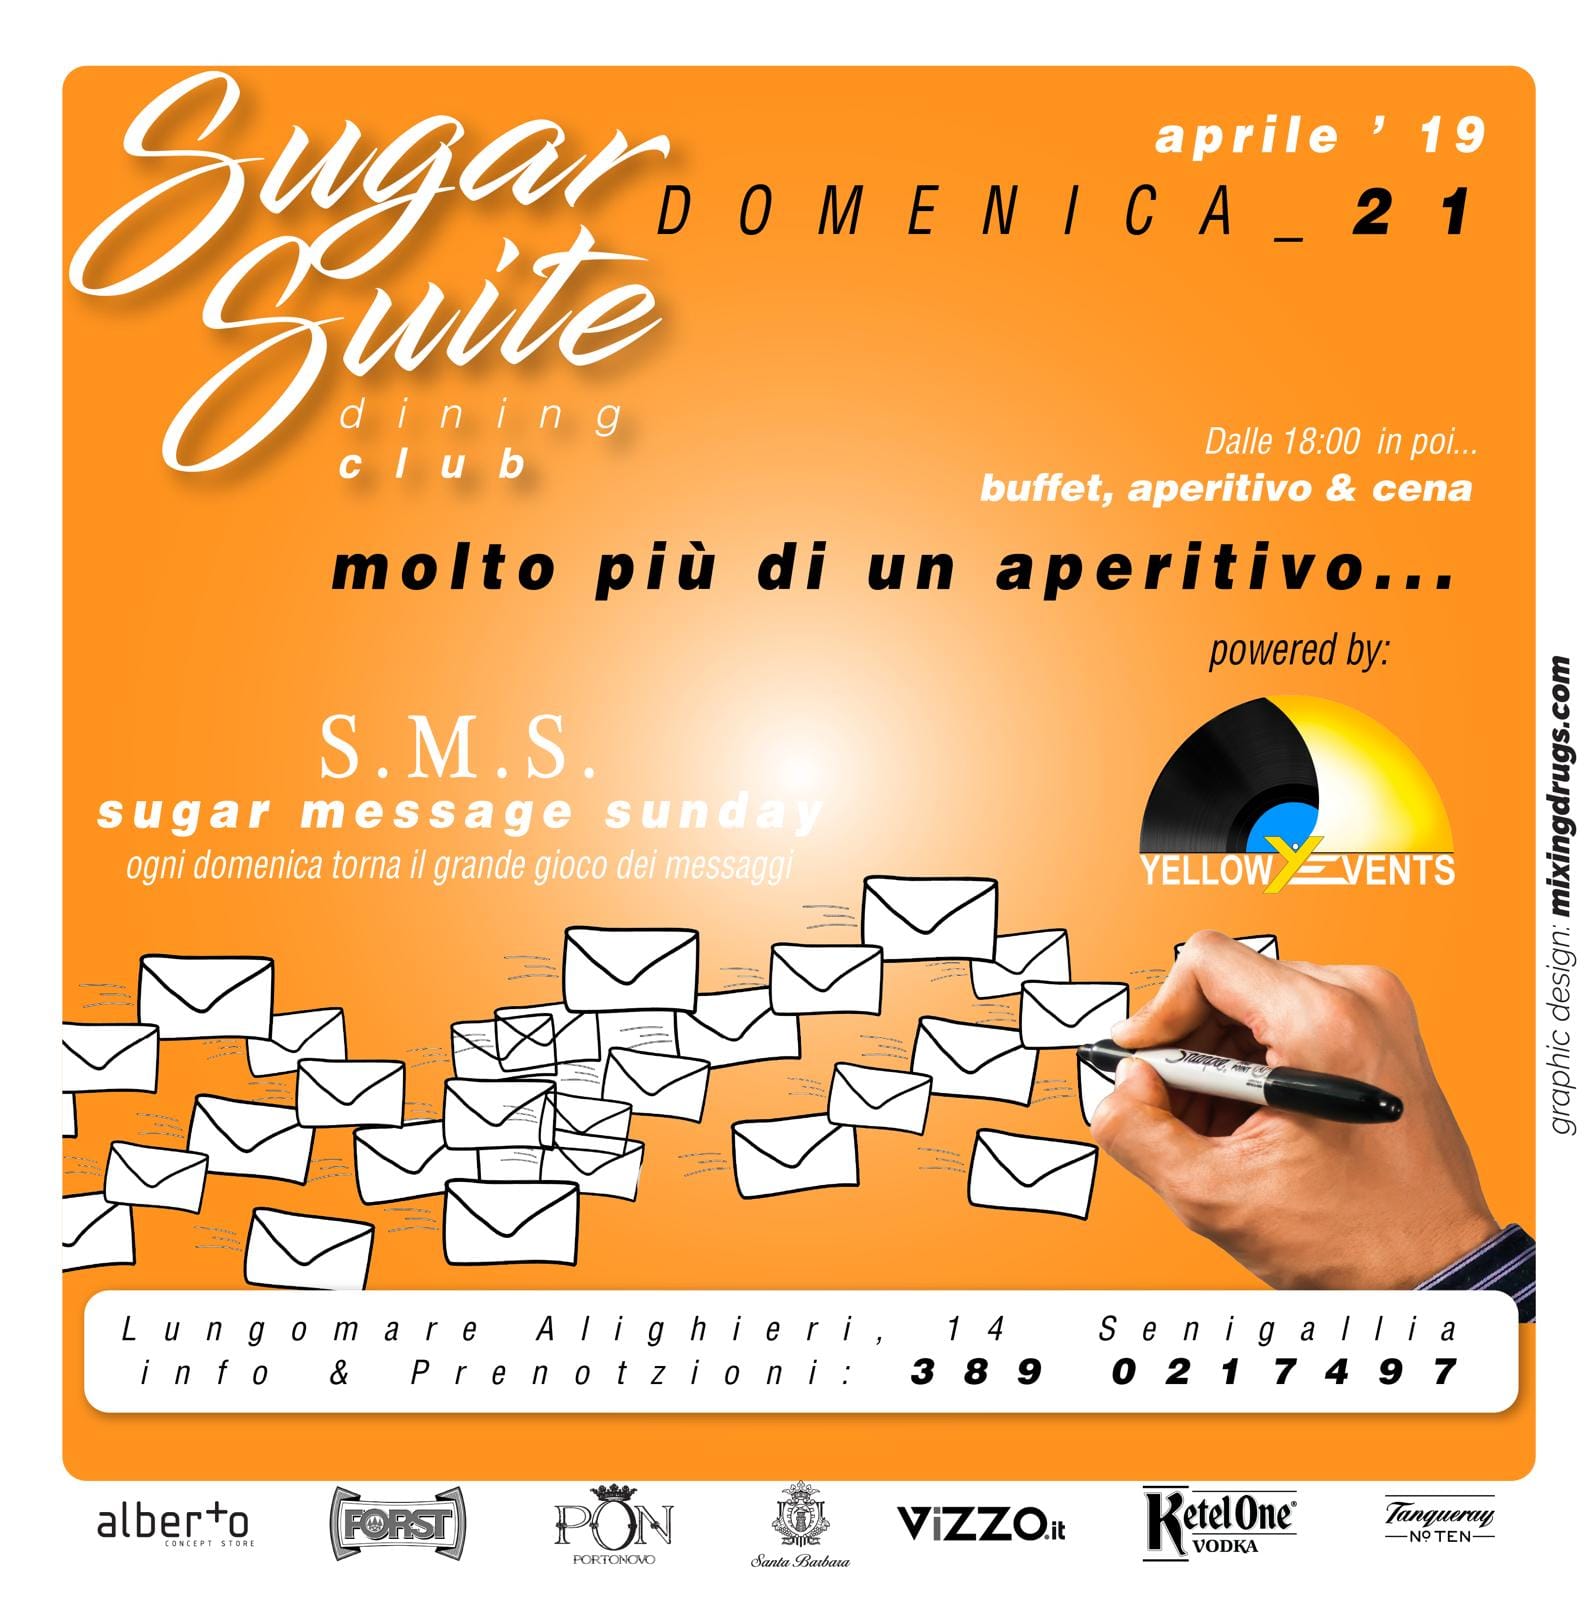 Pasqua Sugar Suite Dinner Club Senigallia